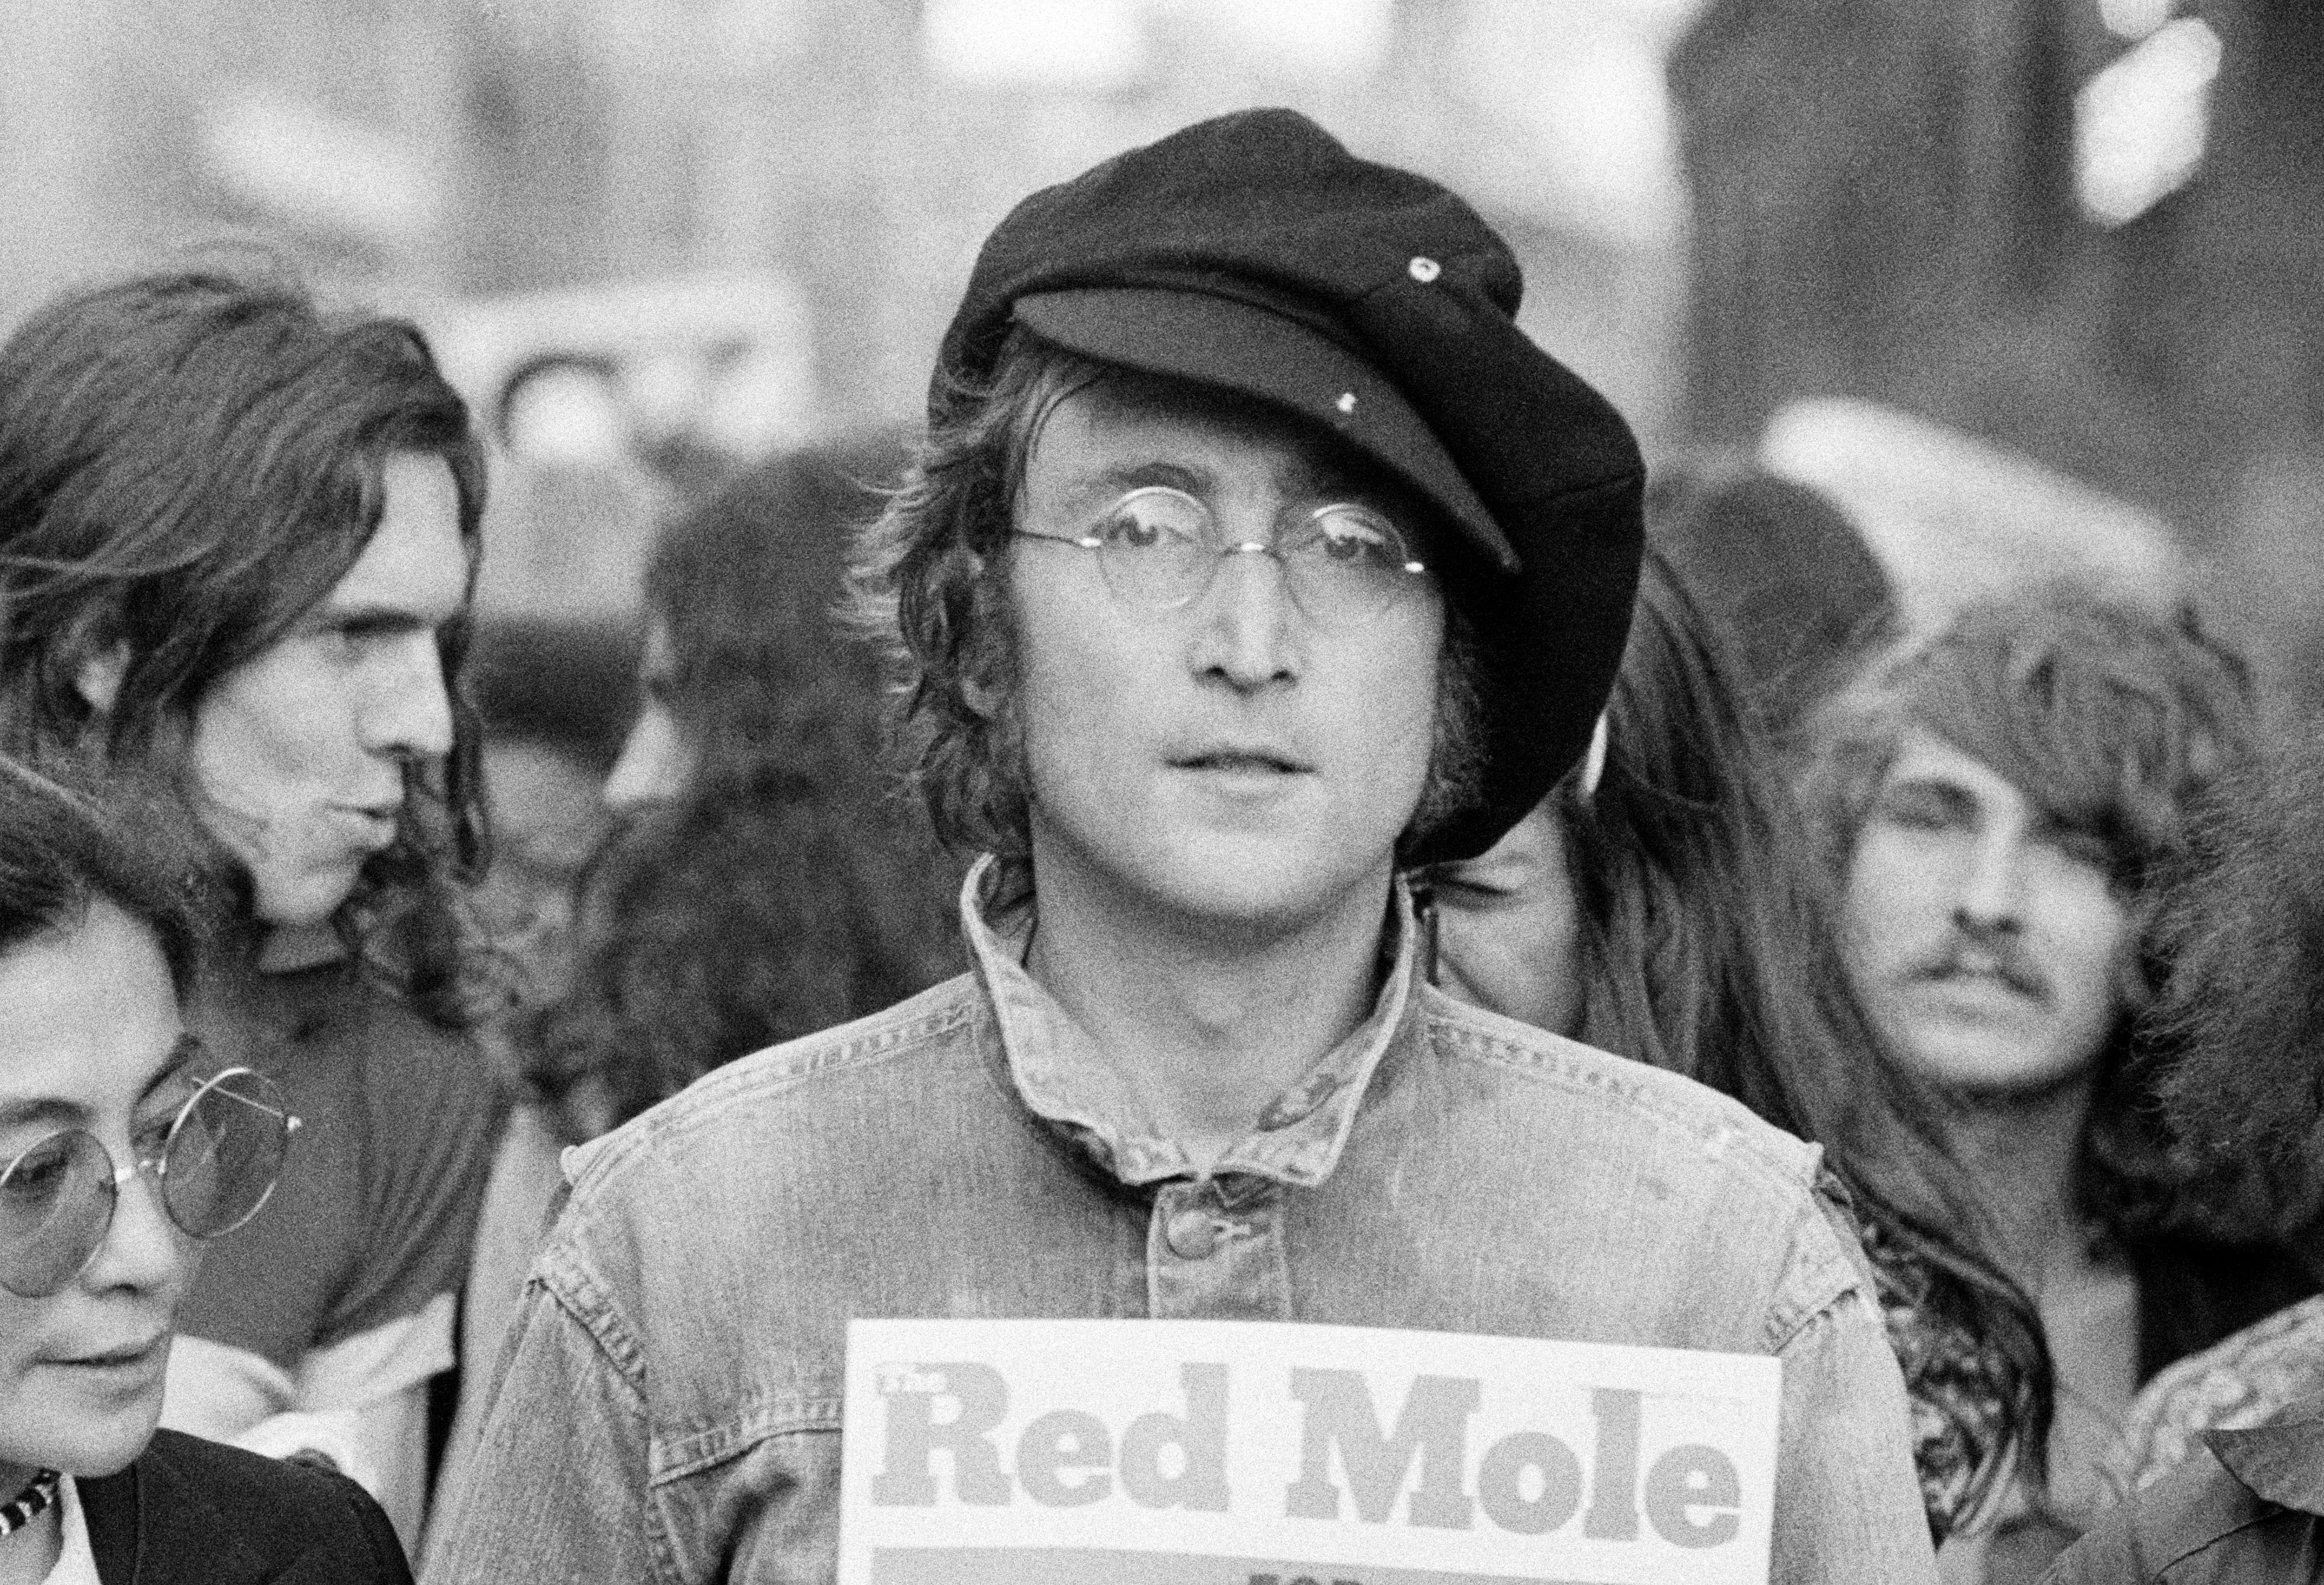 El sexto cassette cuenta con un álbum de estudio inédito de John Lennon en compañía de Kyoko Cox, la hija de Yoko Ono (Photo by Rowland Scherman/Getty Images)